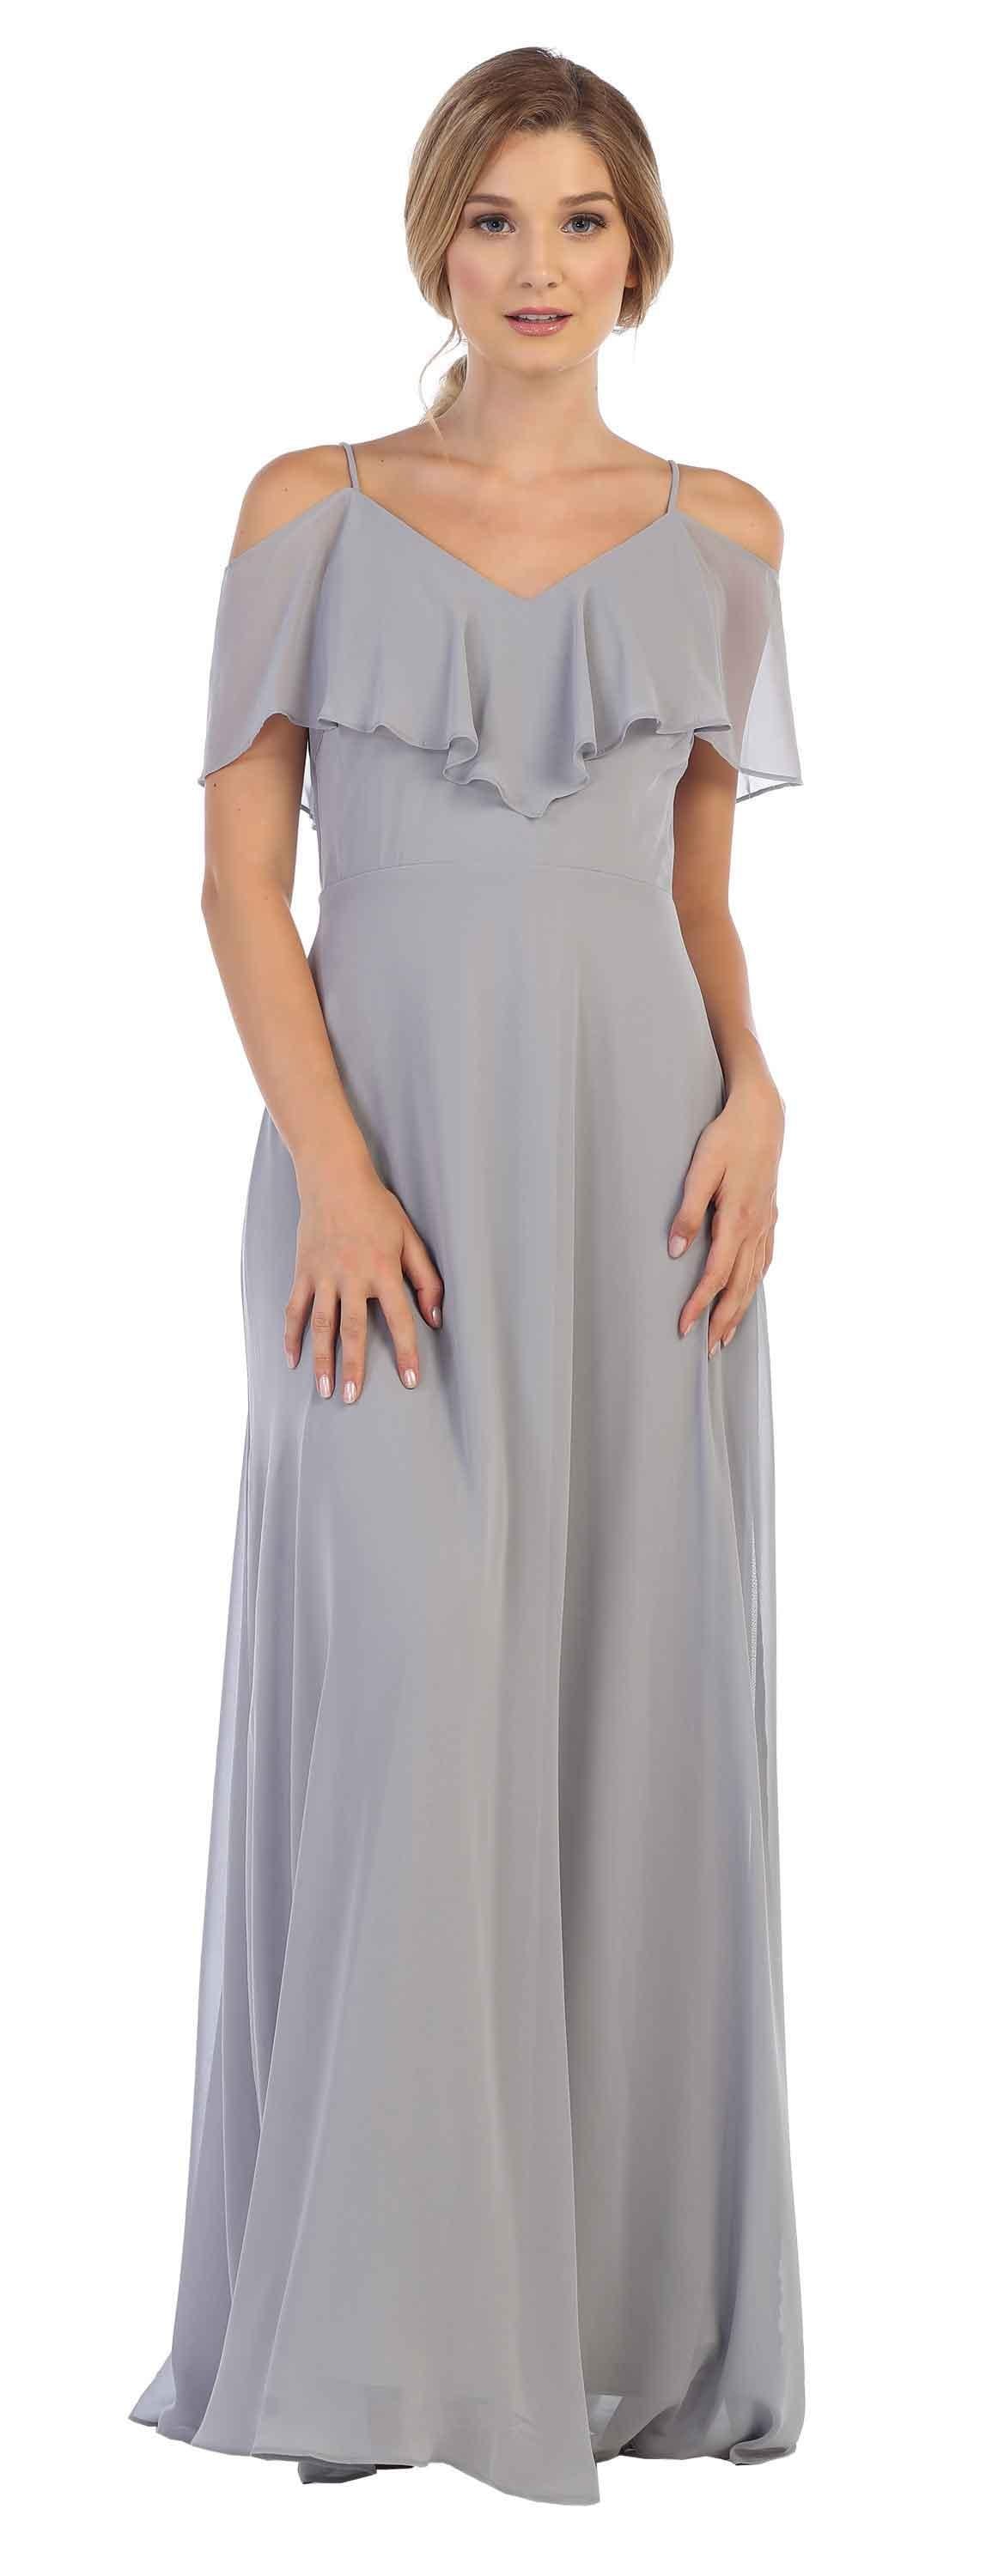 Long Formal Bridesmaids Off Shoulder Prom Dress - The Dress Outlet Eva Fashion